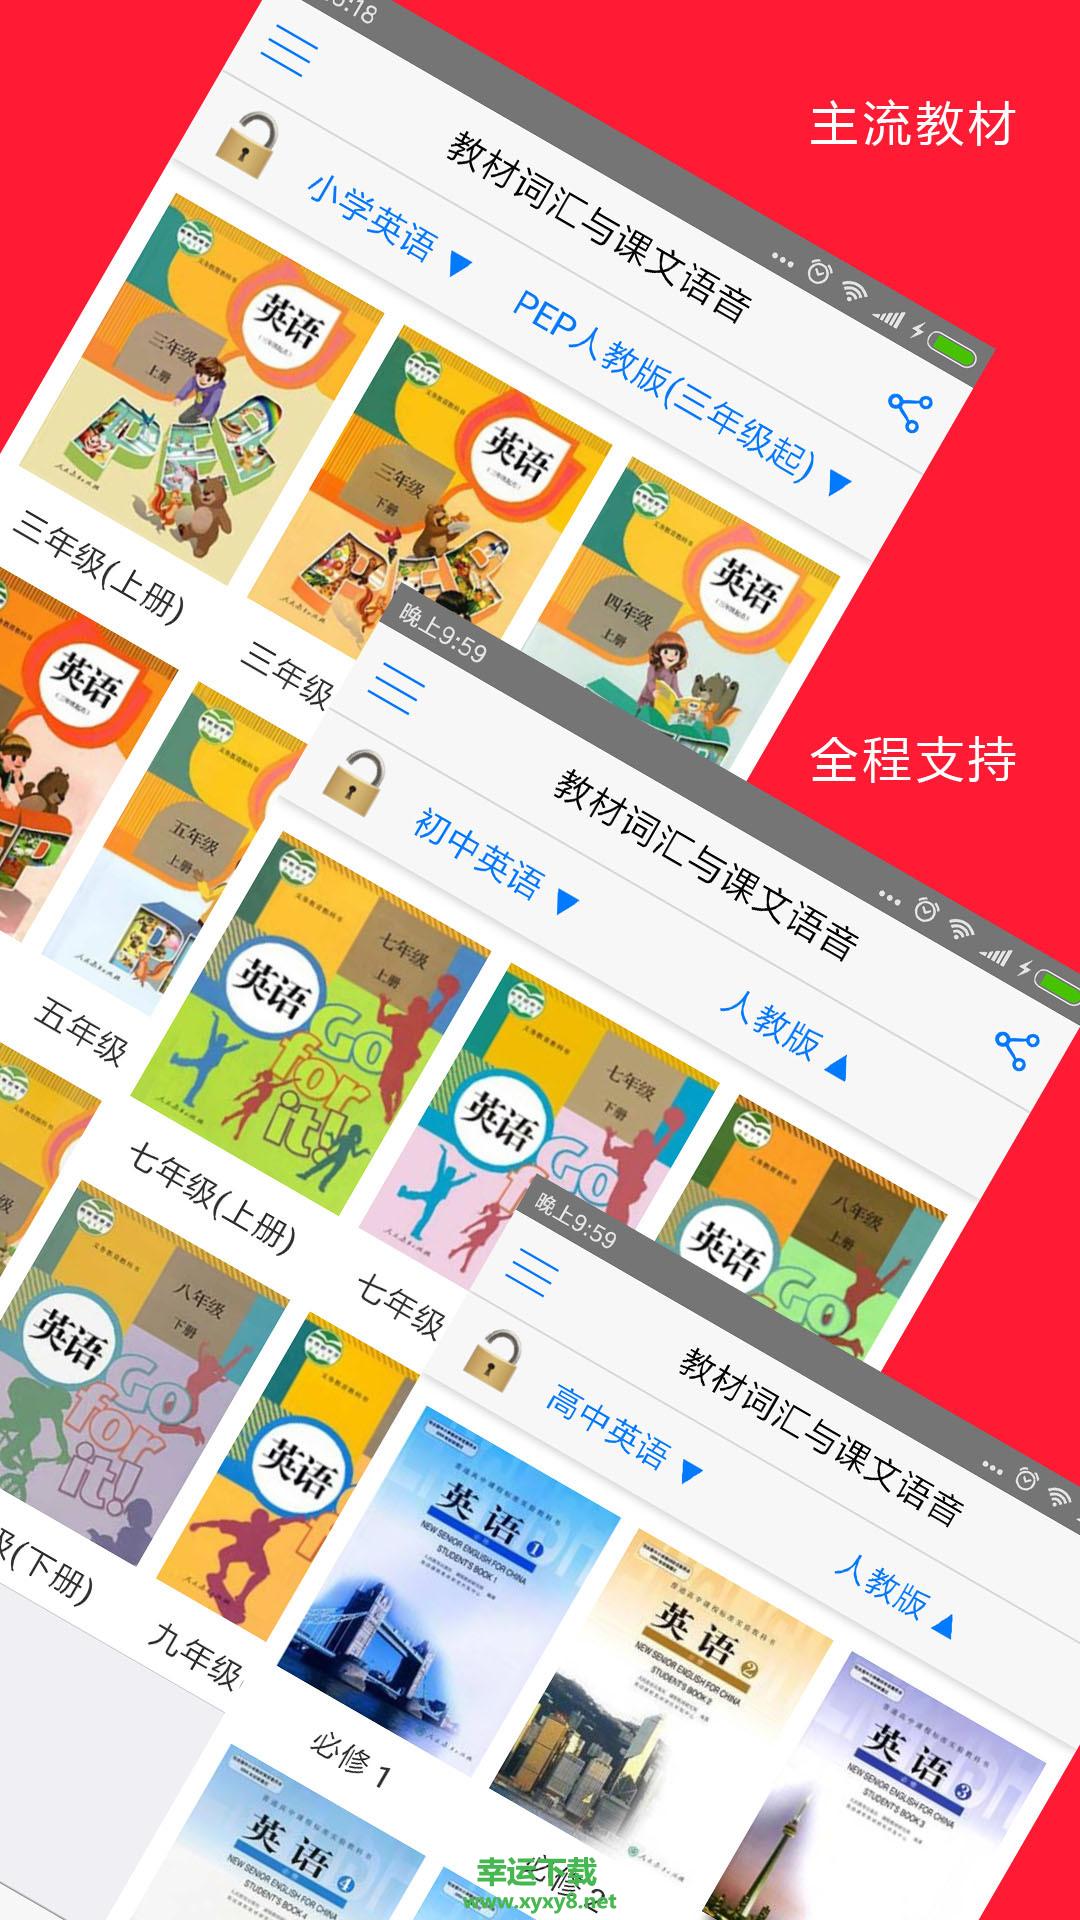 全息自然拼读法app下载